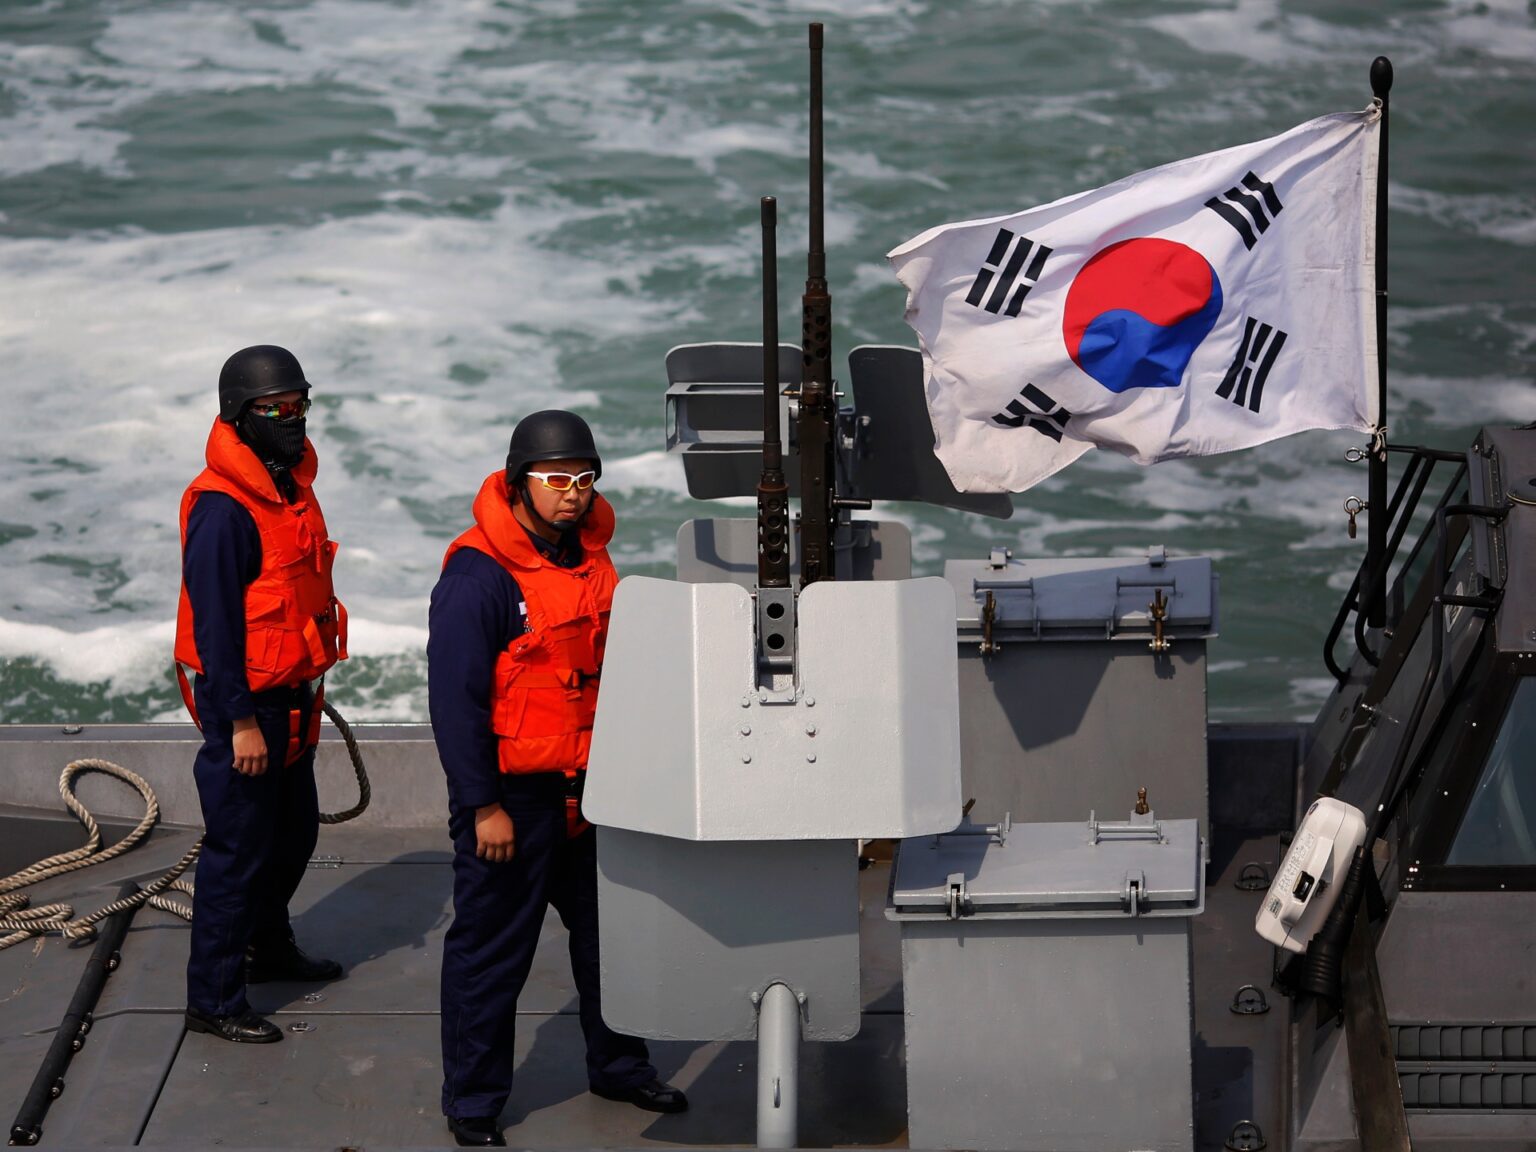 S Korea fires warning shots at North Korean boat